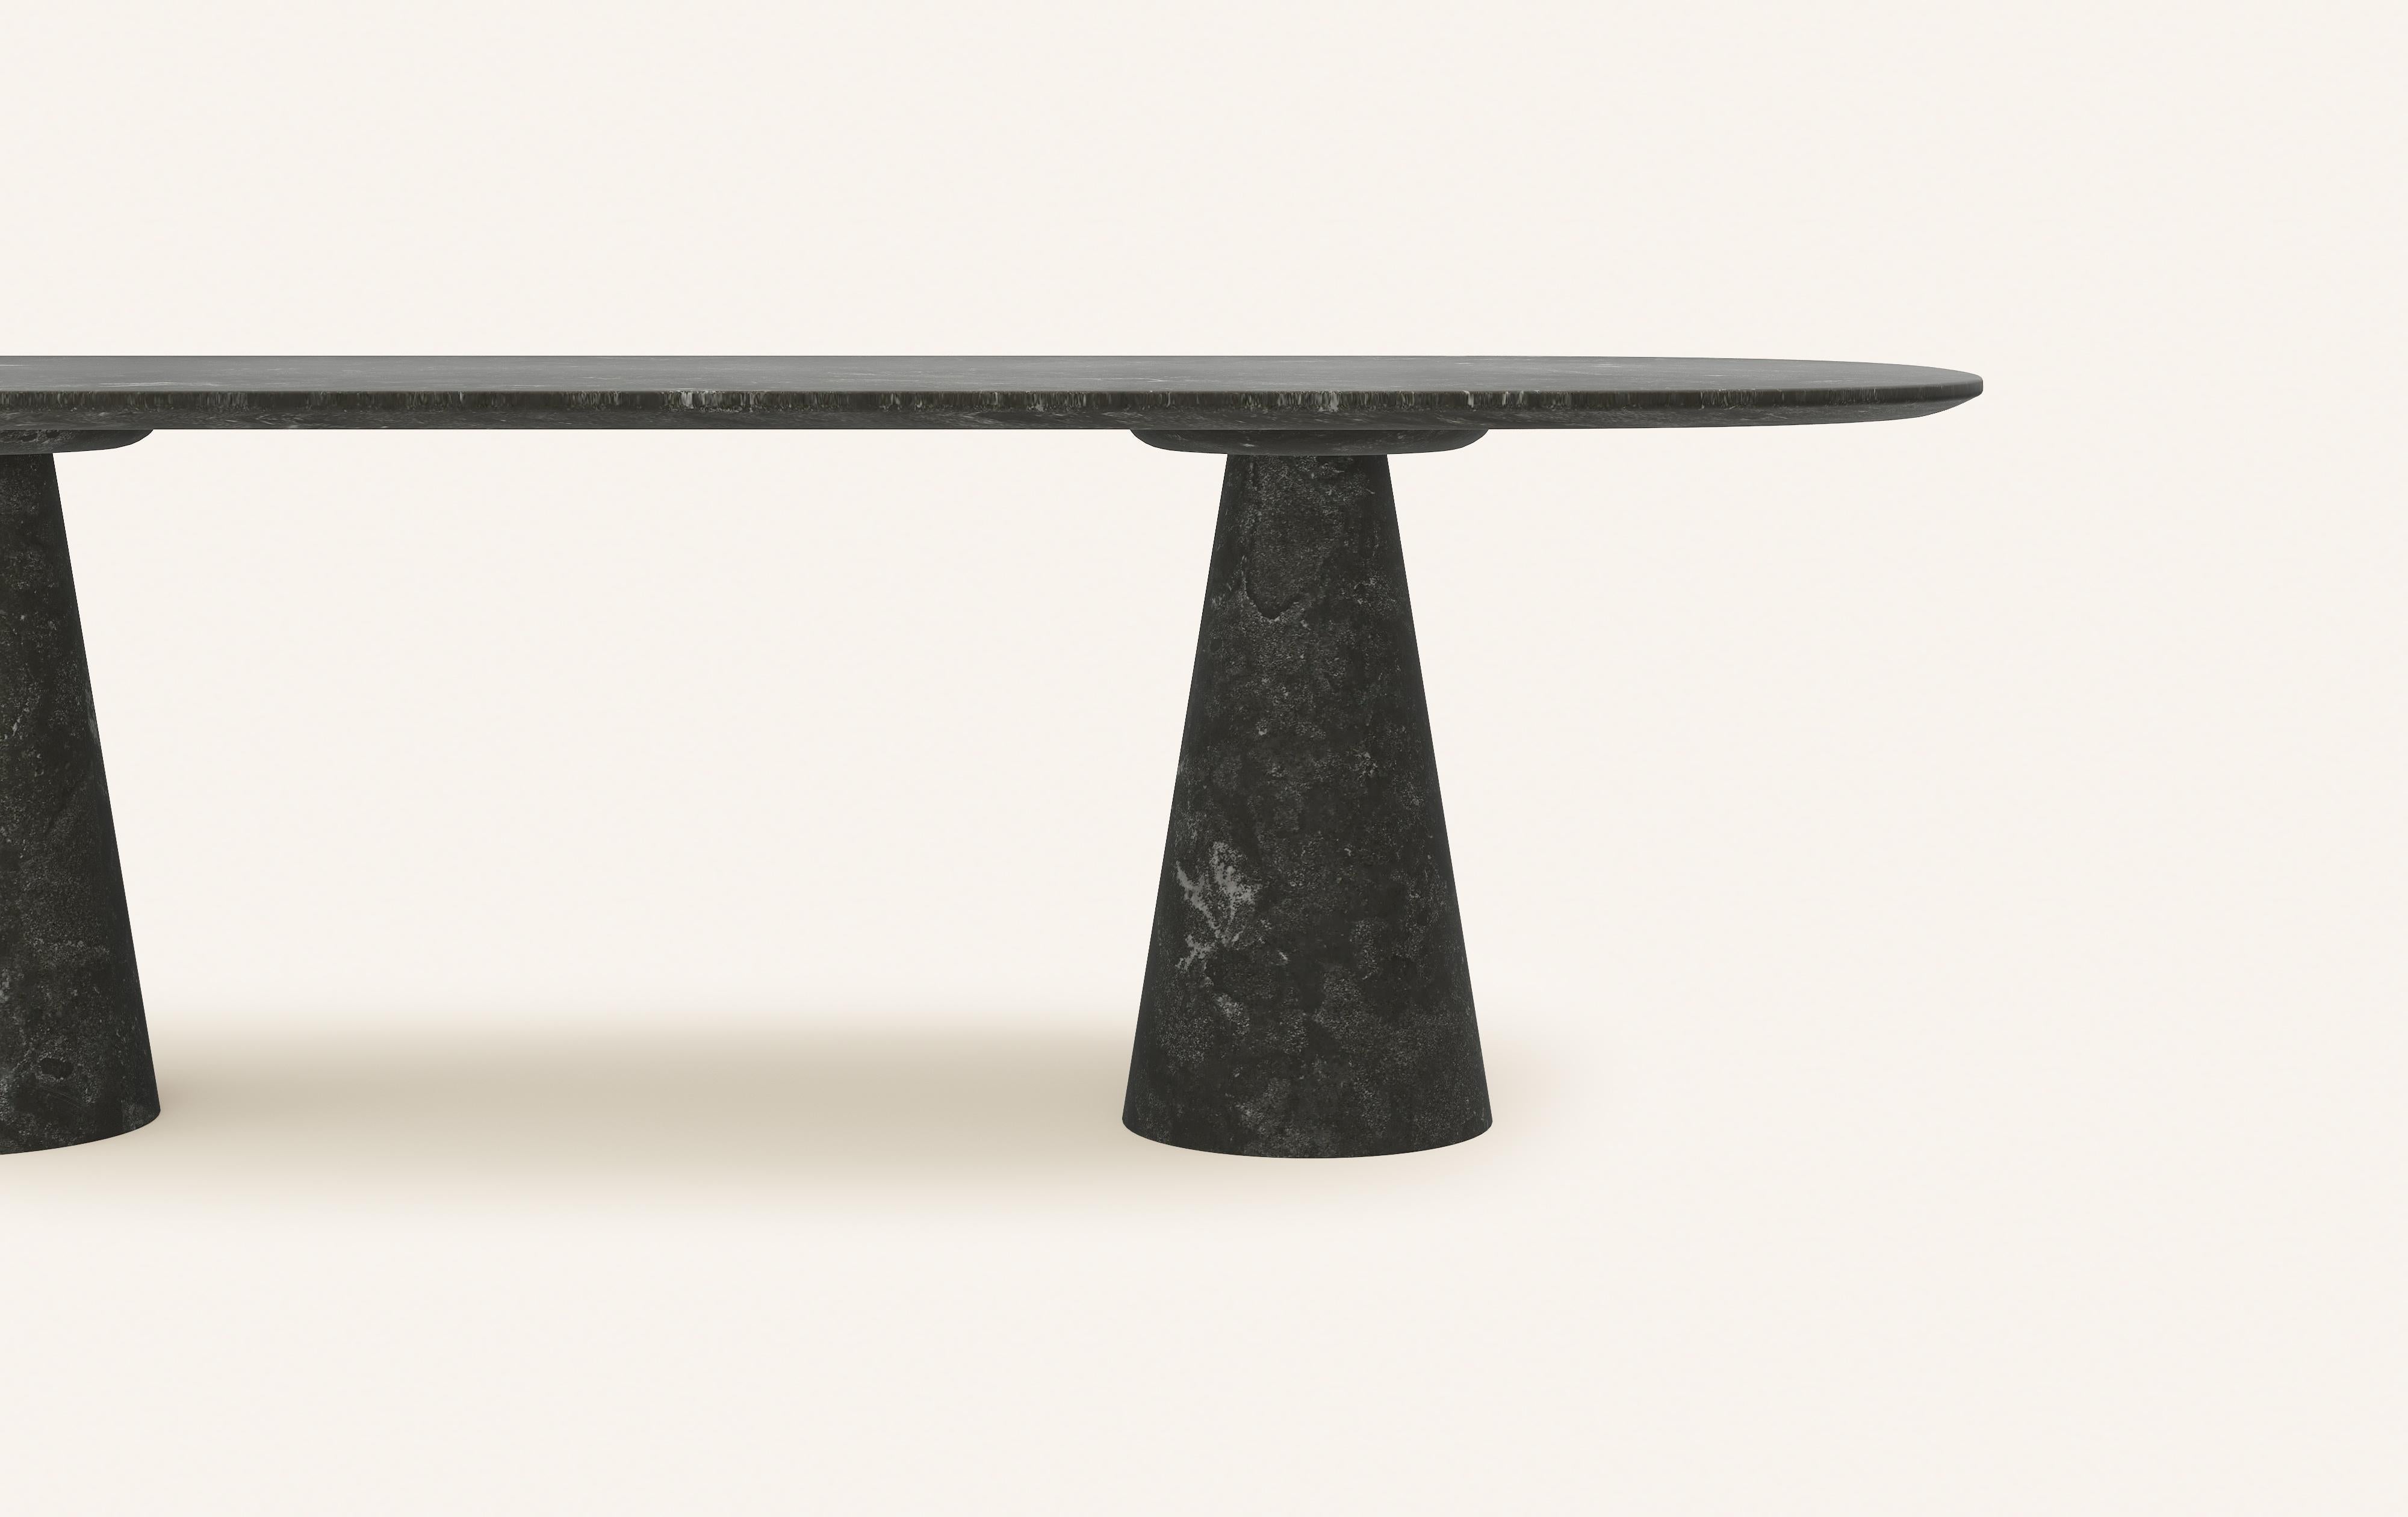 American FORM(LA) Cono Oval Dining Table 118”L x 48”W x 30”H Nero Petite Granite For Sale